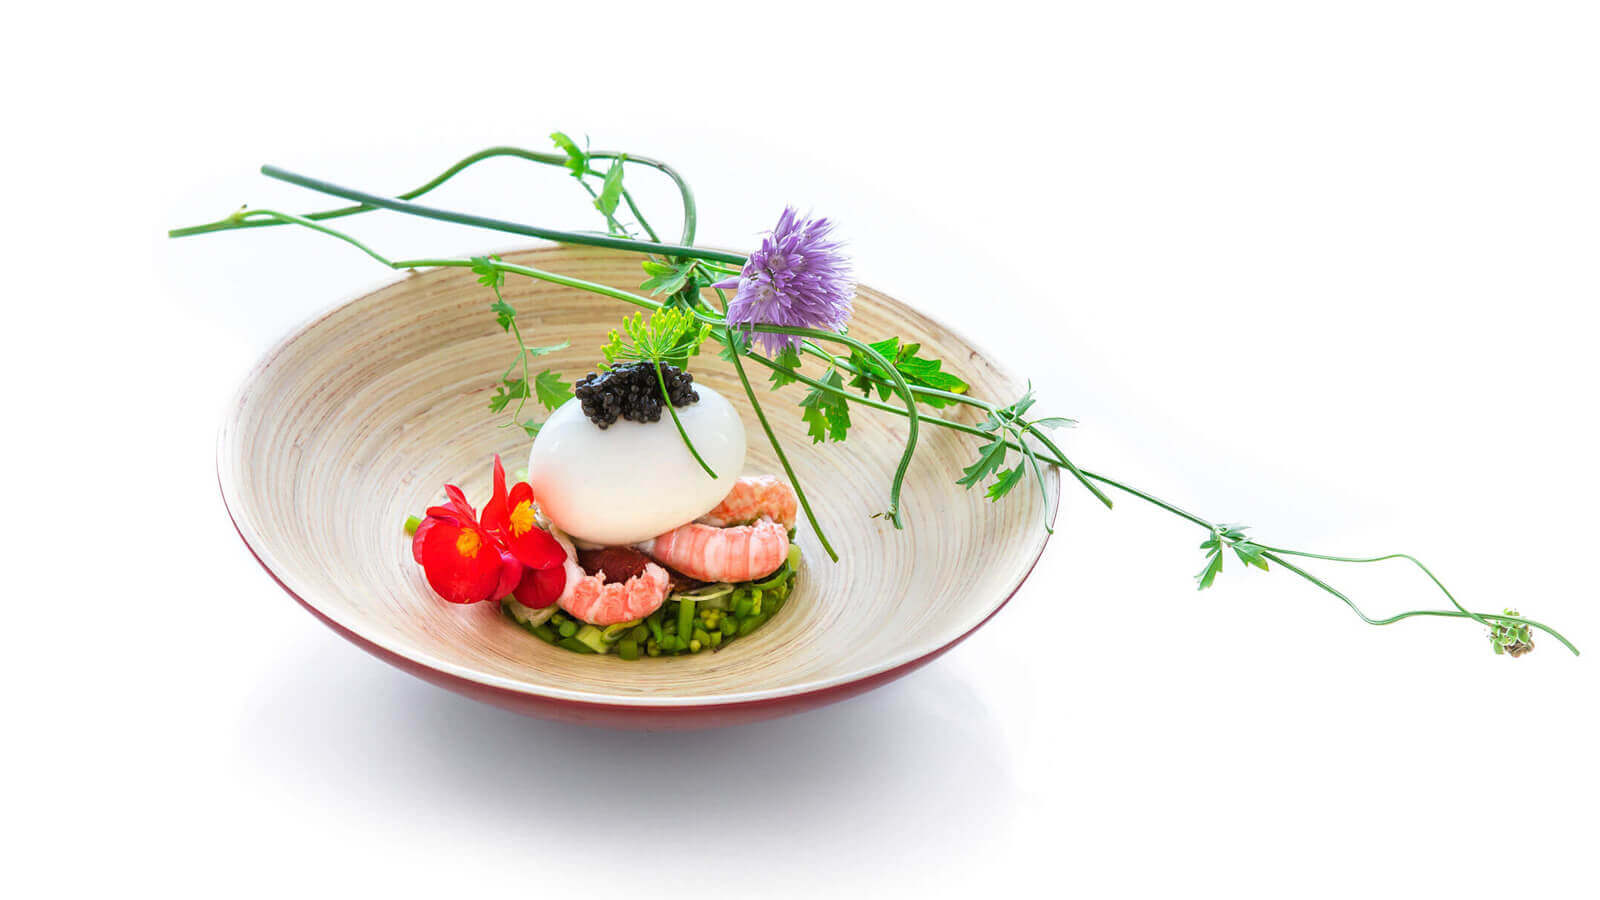 photos des créations de plats haut de gamme pour un grand restaurant gastronomique par Antoine Duchene photographe